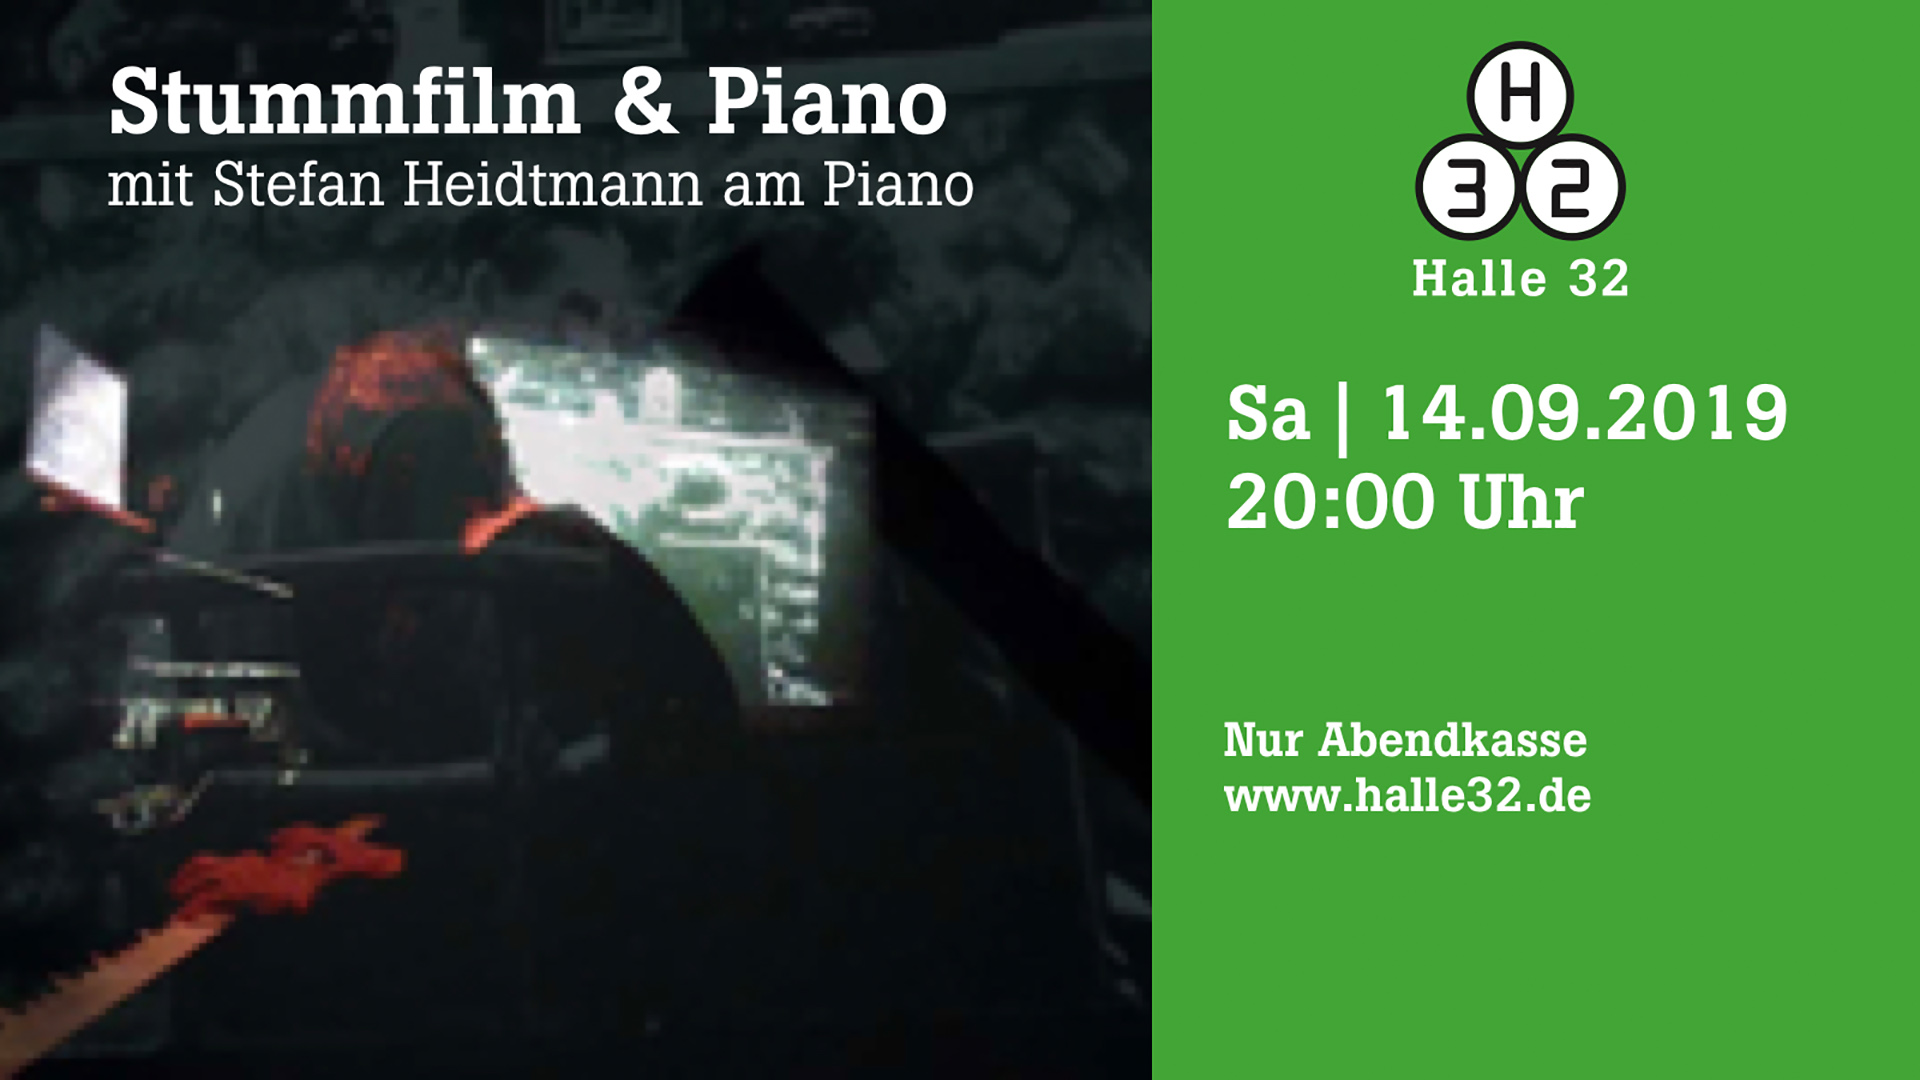 Halle 32 | Stummfilm & Piano 